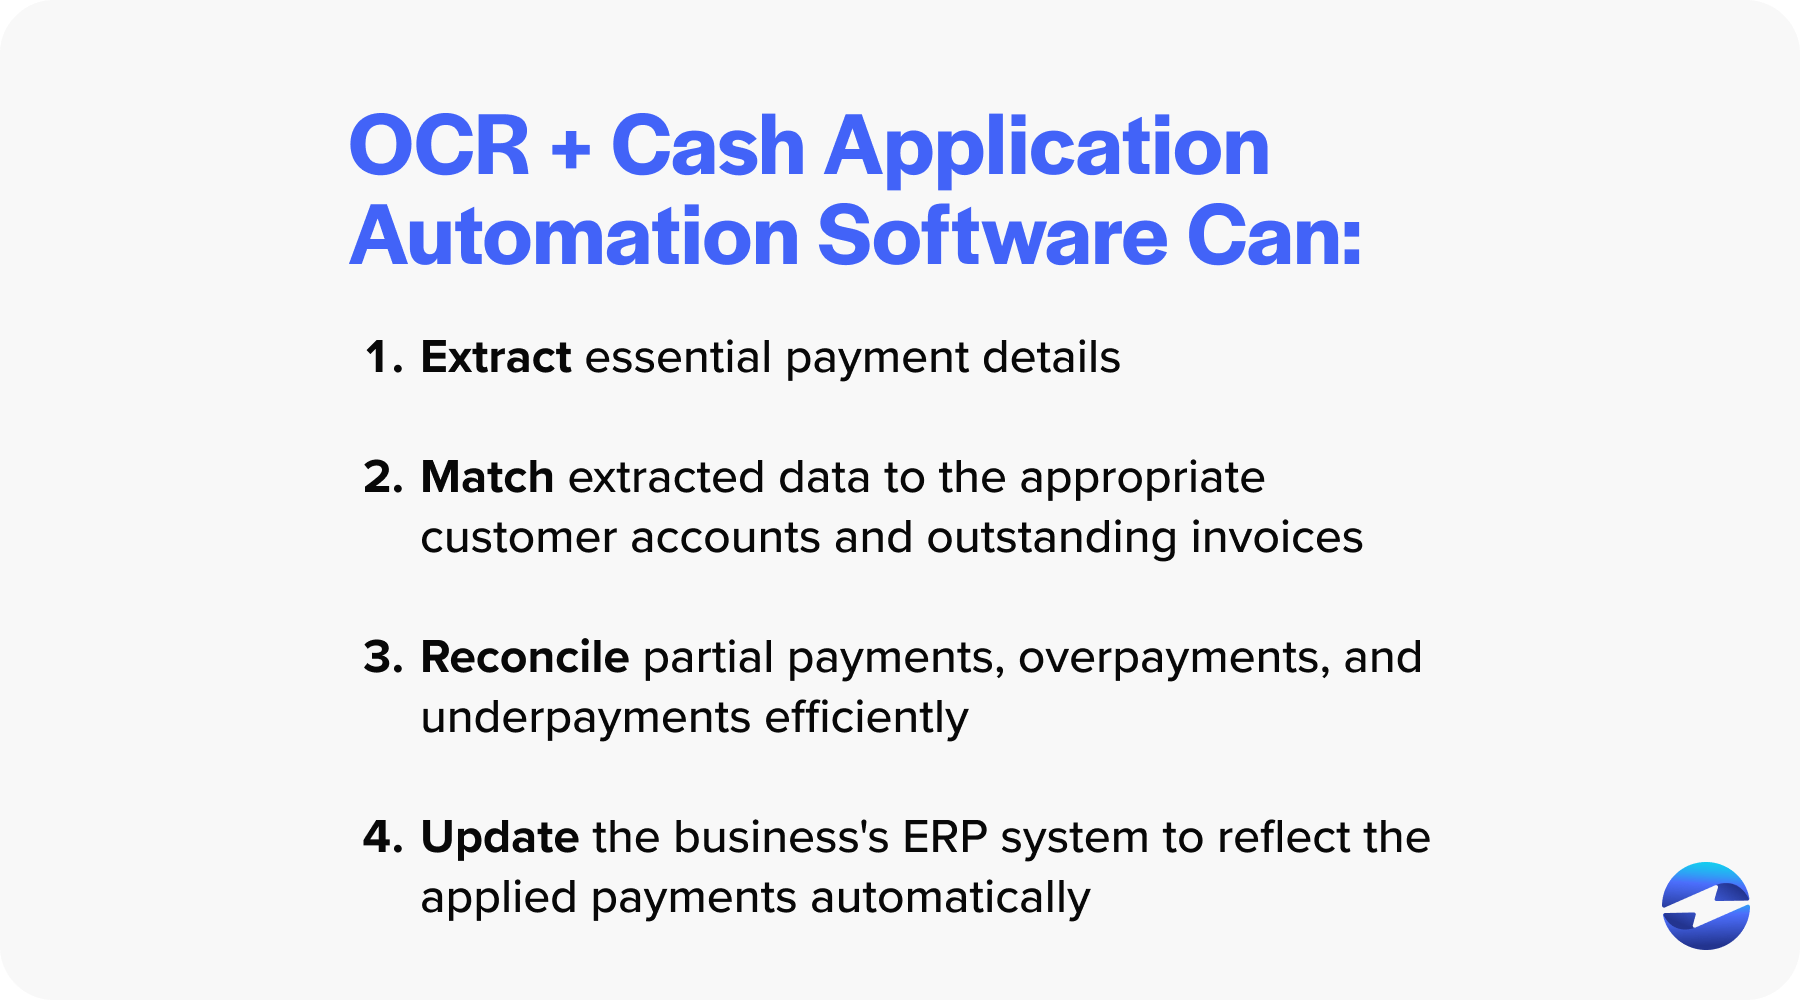 Cash application + OCR